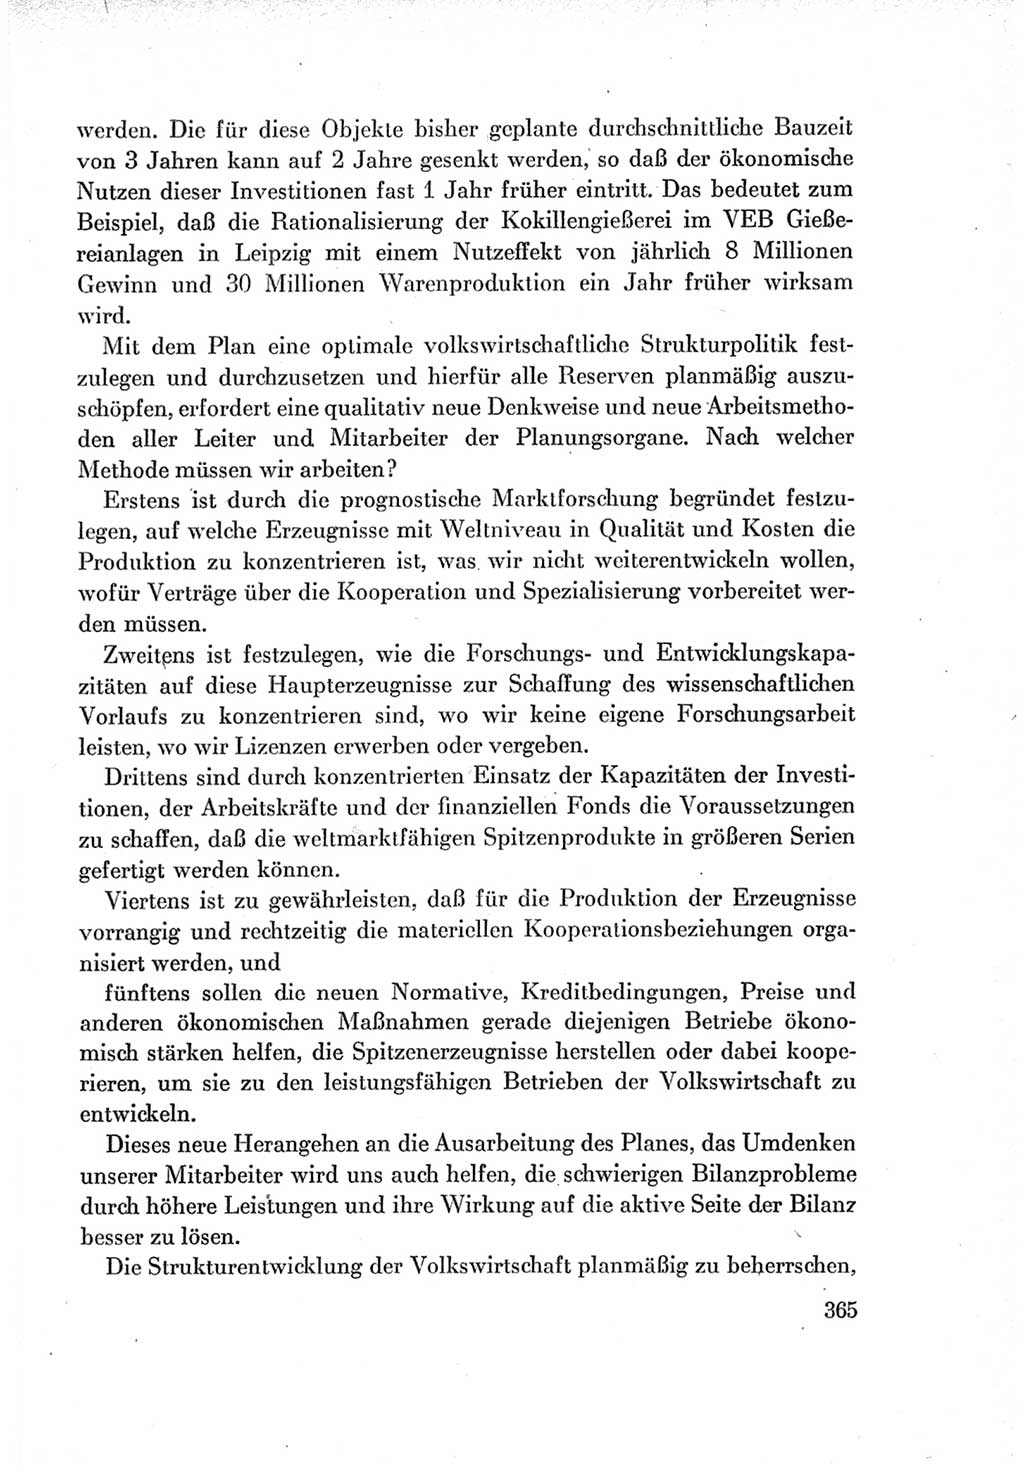 Protokoll der Verhandlungen des Ⅶ. Parteitages der Sozialistischen Einheitspartei Deutschlands (SED) [Deutsche Demokratische Republik (DDR)] 1967, Band Ⅰ, Seite 365 (Prot. Verh. Ⅶ. PT SED DDR 1967, Bd. Ⅰ, S. 365)